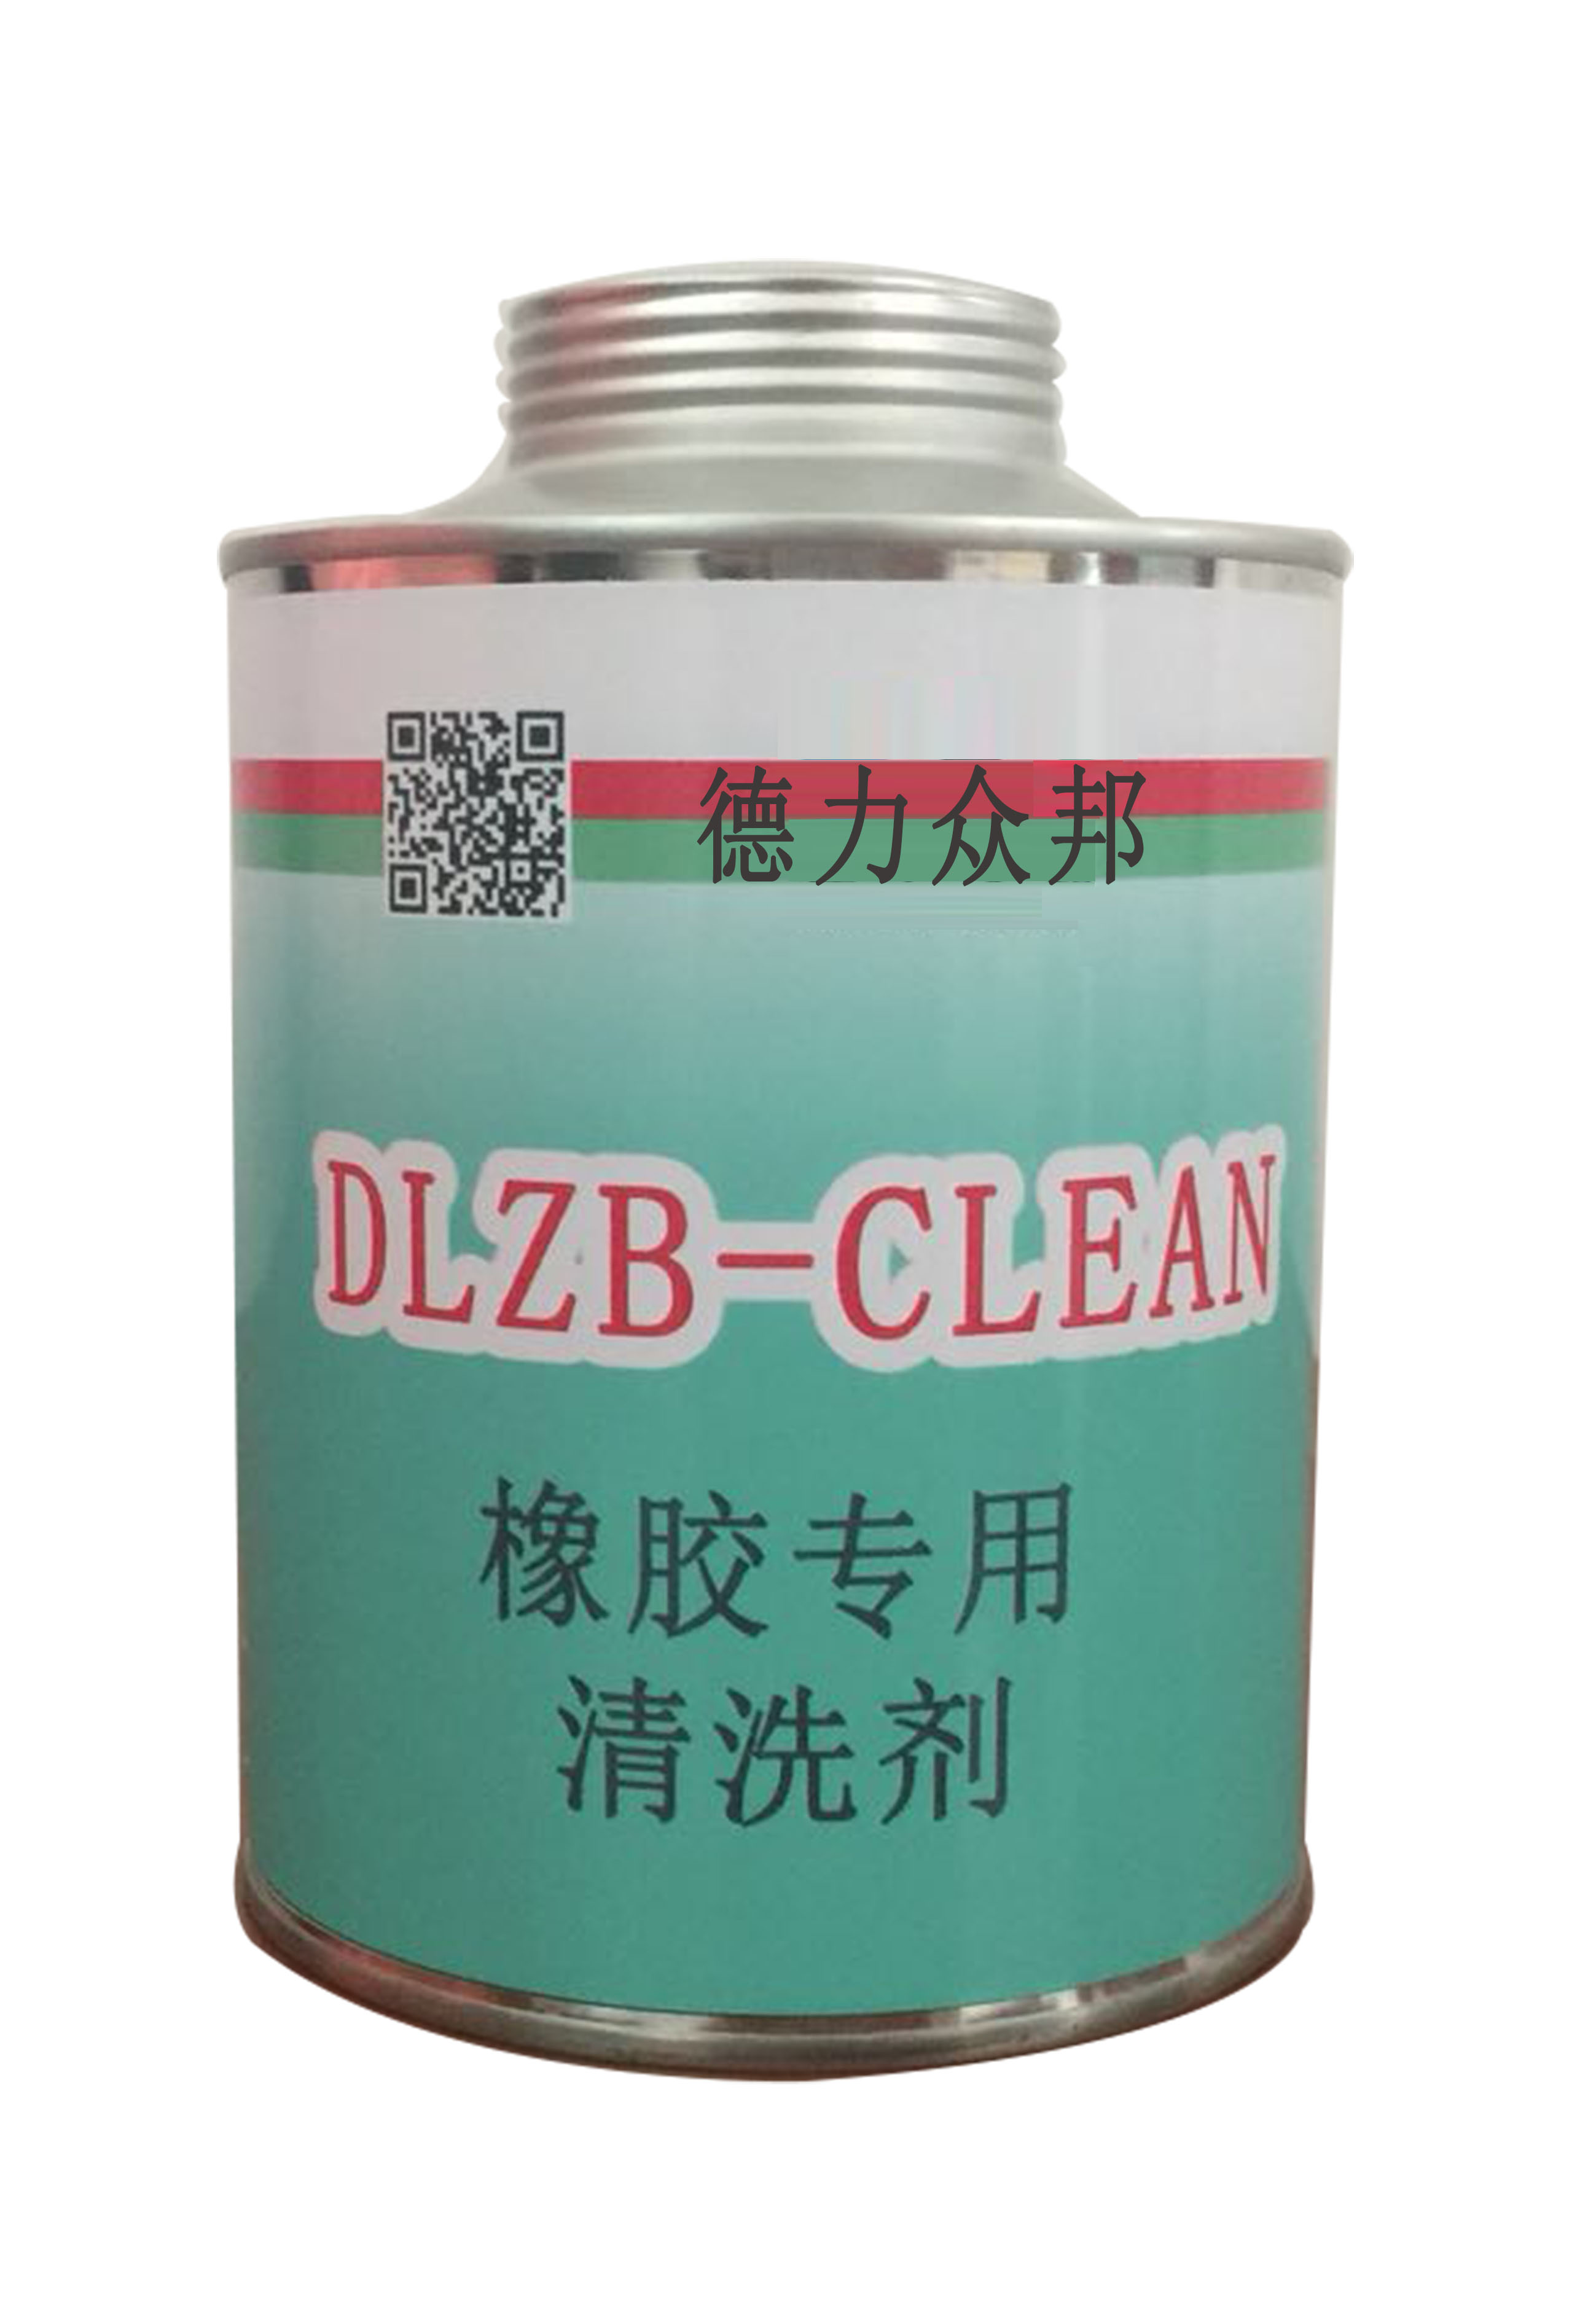 DLZB 橡胶专用清洗剂